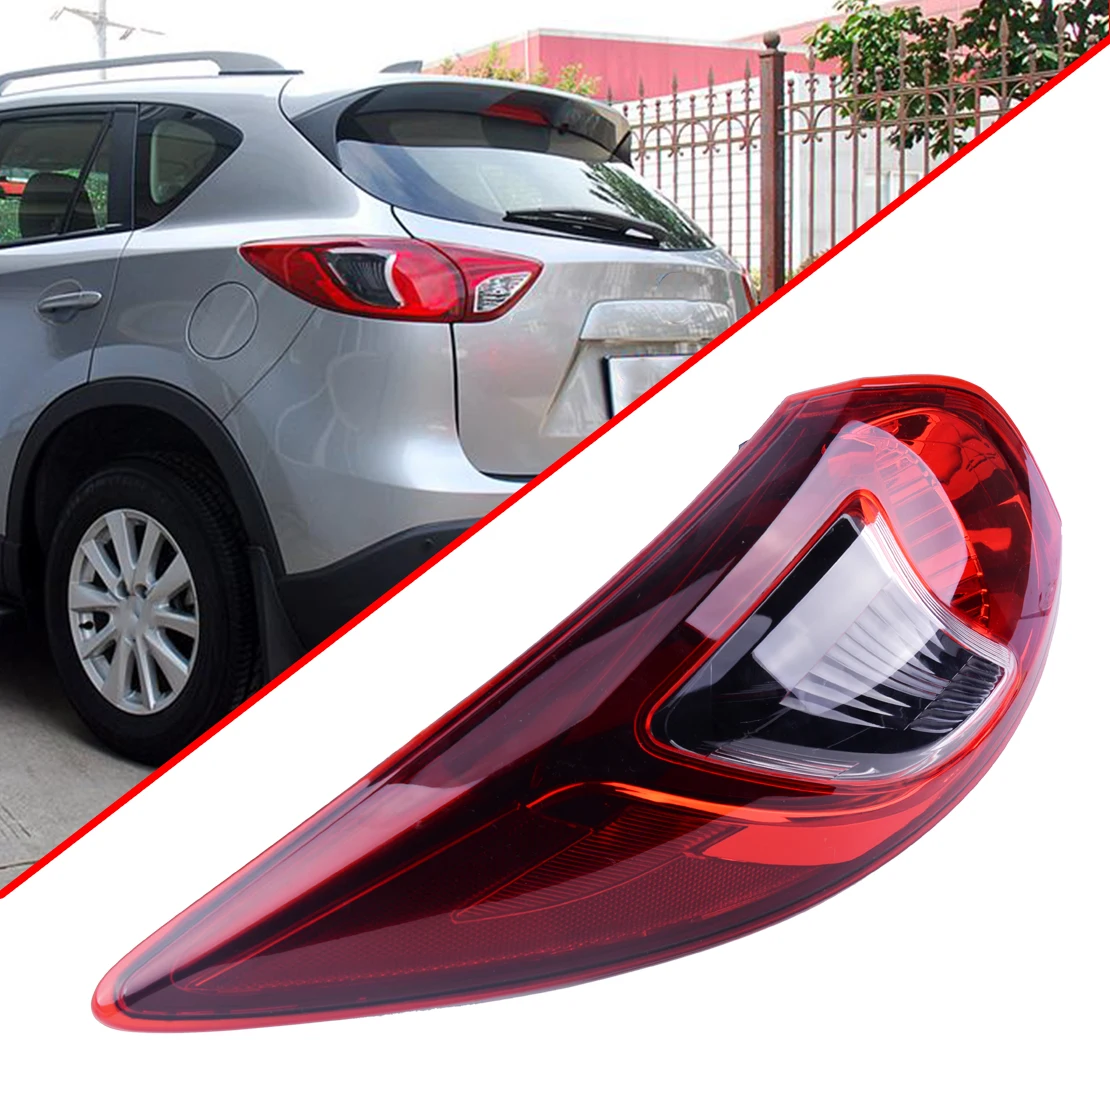 Beler задний автомобильный левой стороны водителя outerbrake фонарь лампа из АБС-пластика Пластик подходит для Mazda CX-5 CX5 2013 2014 2015 2016